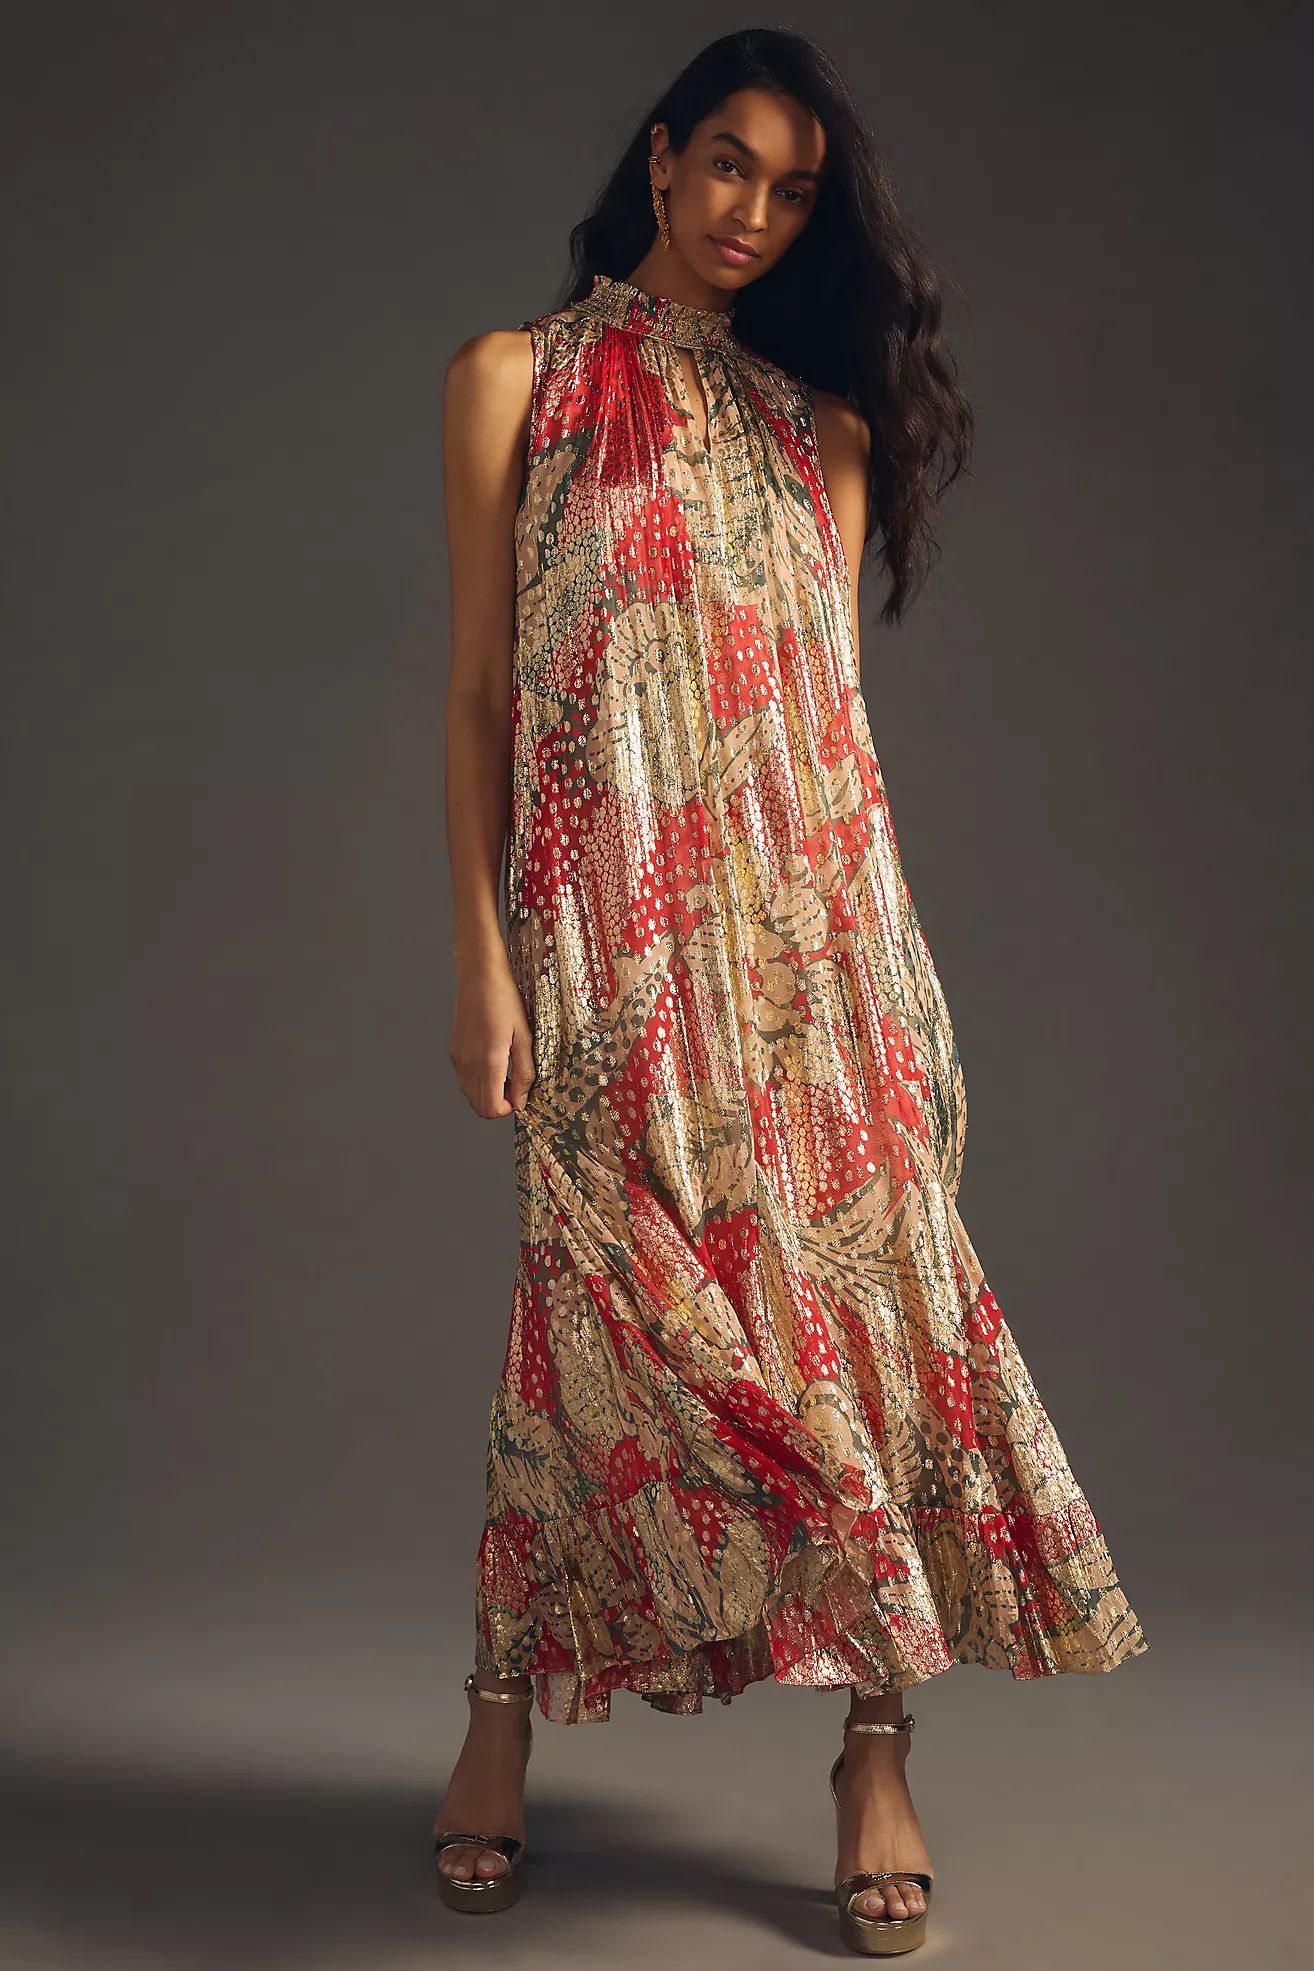 Verb by Pallavi Singhee Printed Halter Dress | Anthropologie (US)